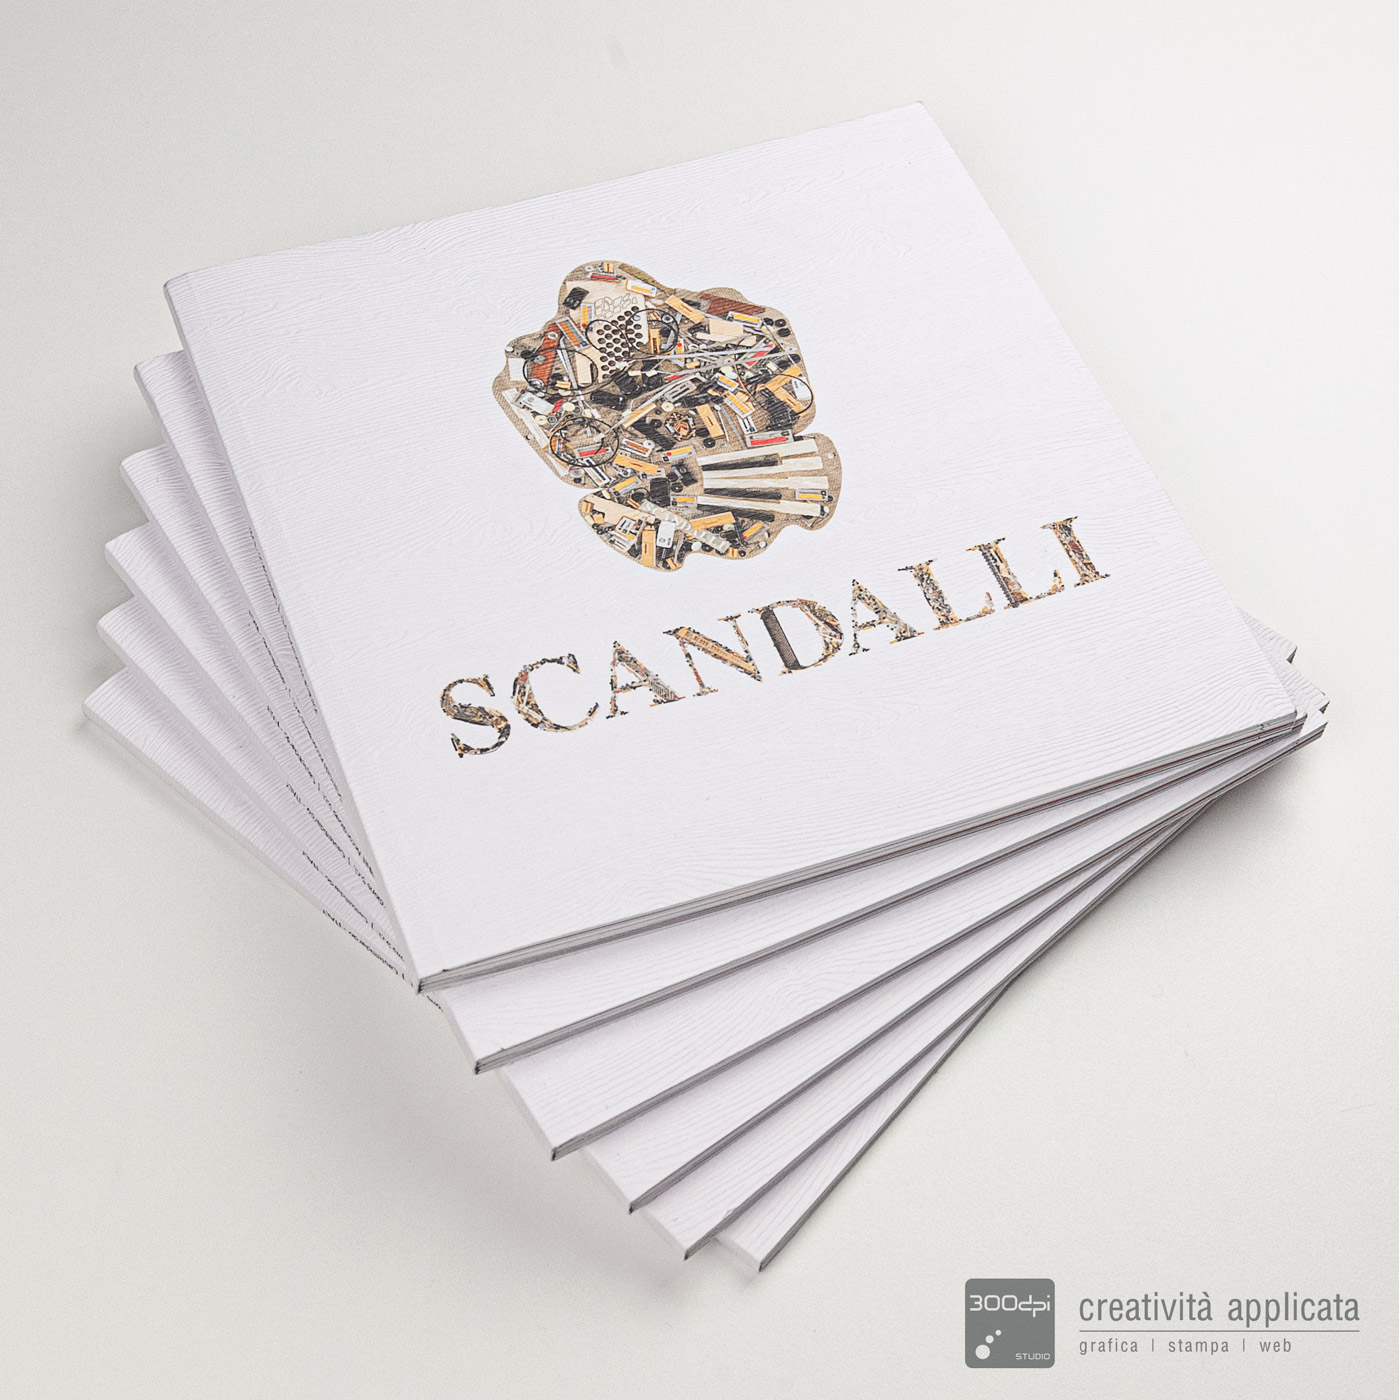 Catalogo Scandalli foto copertina - 300dpi STUDIO